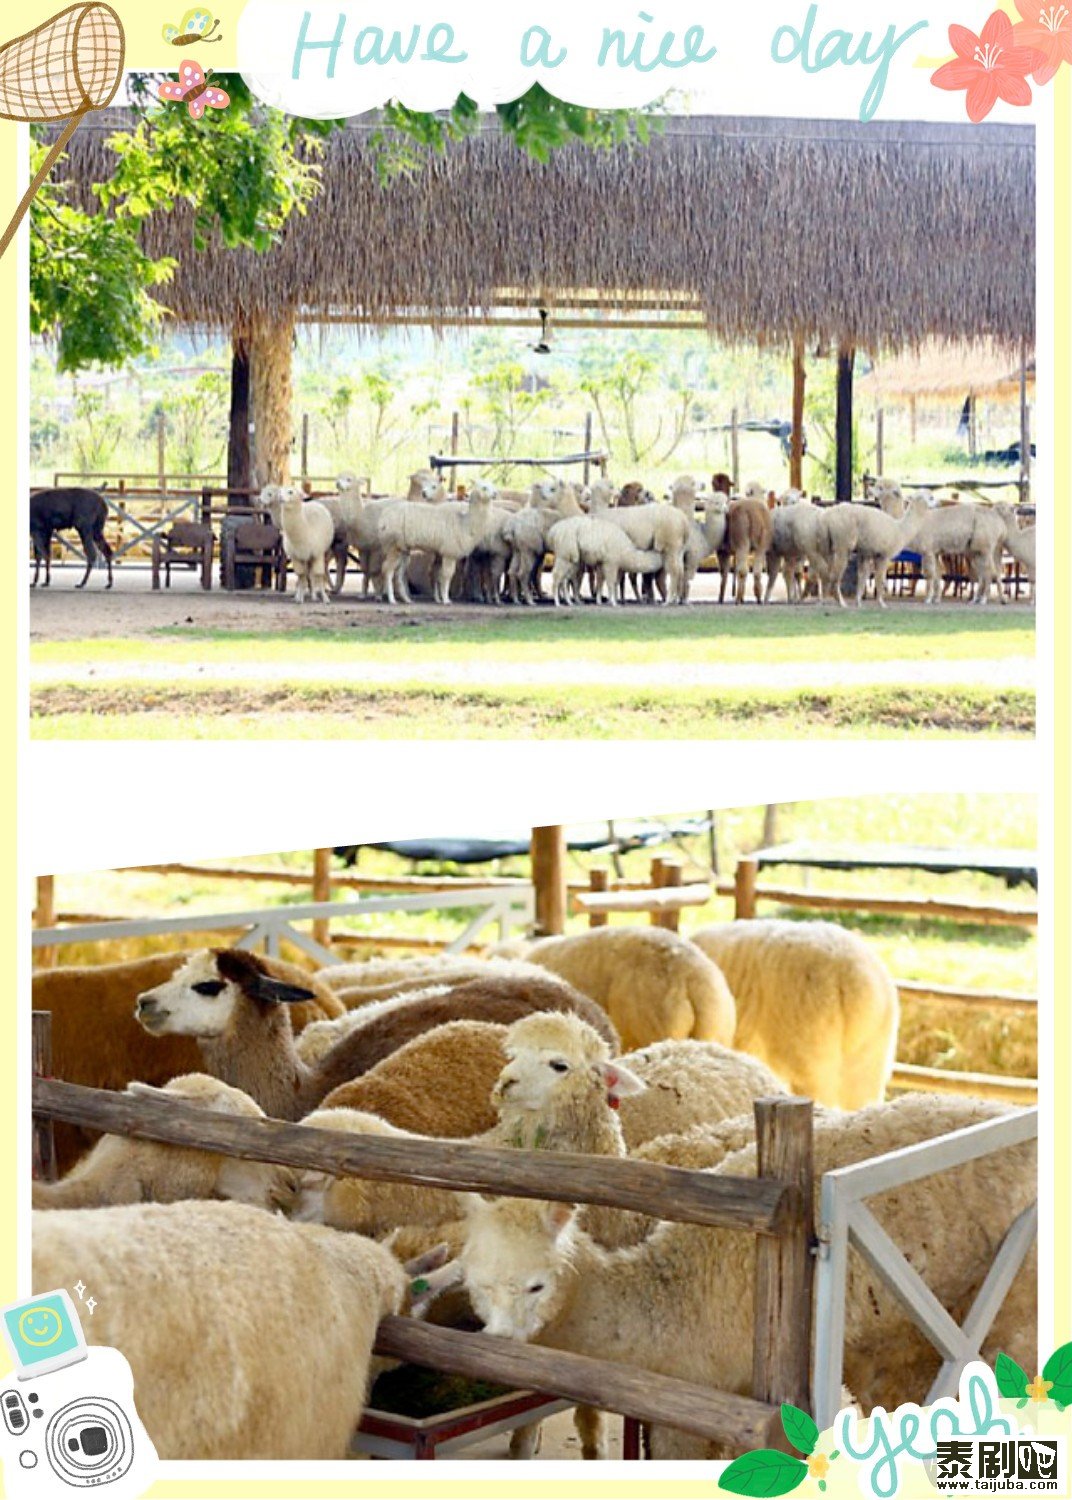 泰国旅游:呆萌好玩的羊驼农场2